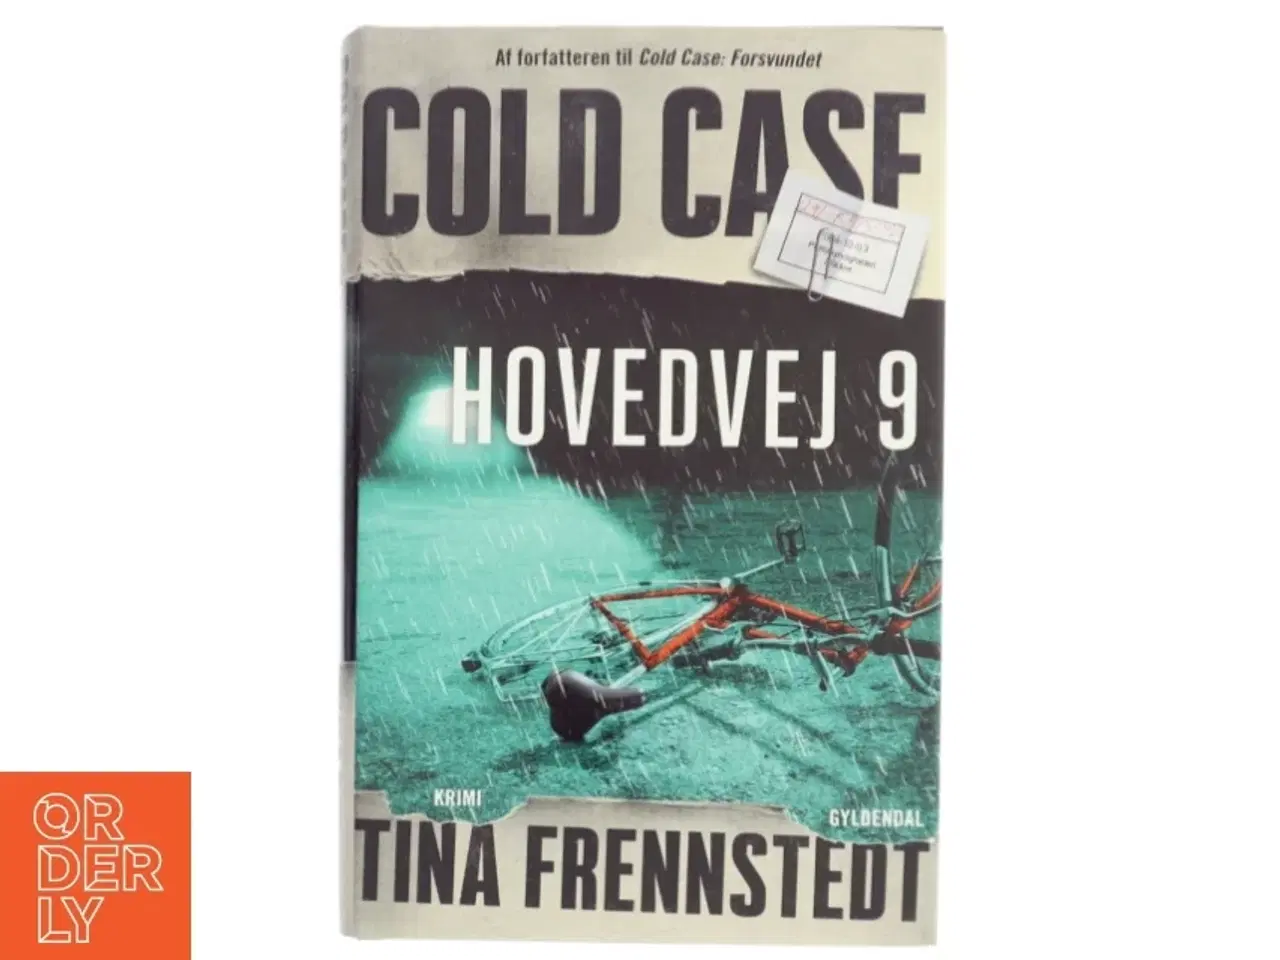 Billede 1 - Cold case - Hovedvej 9 : krimi af Tina Frennstedt (Bog)